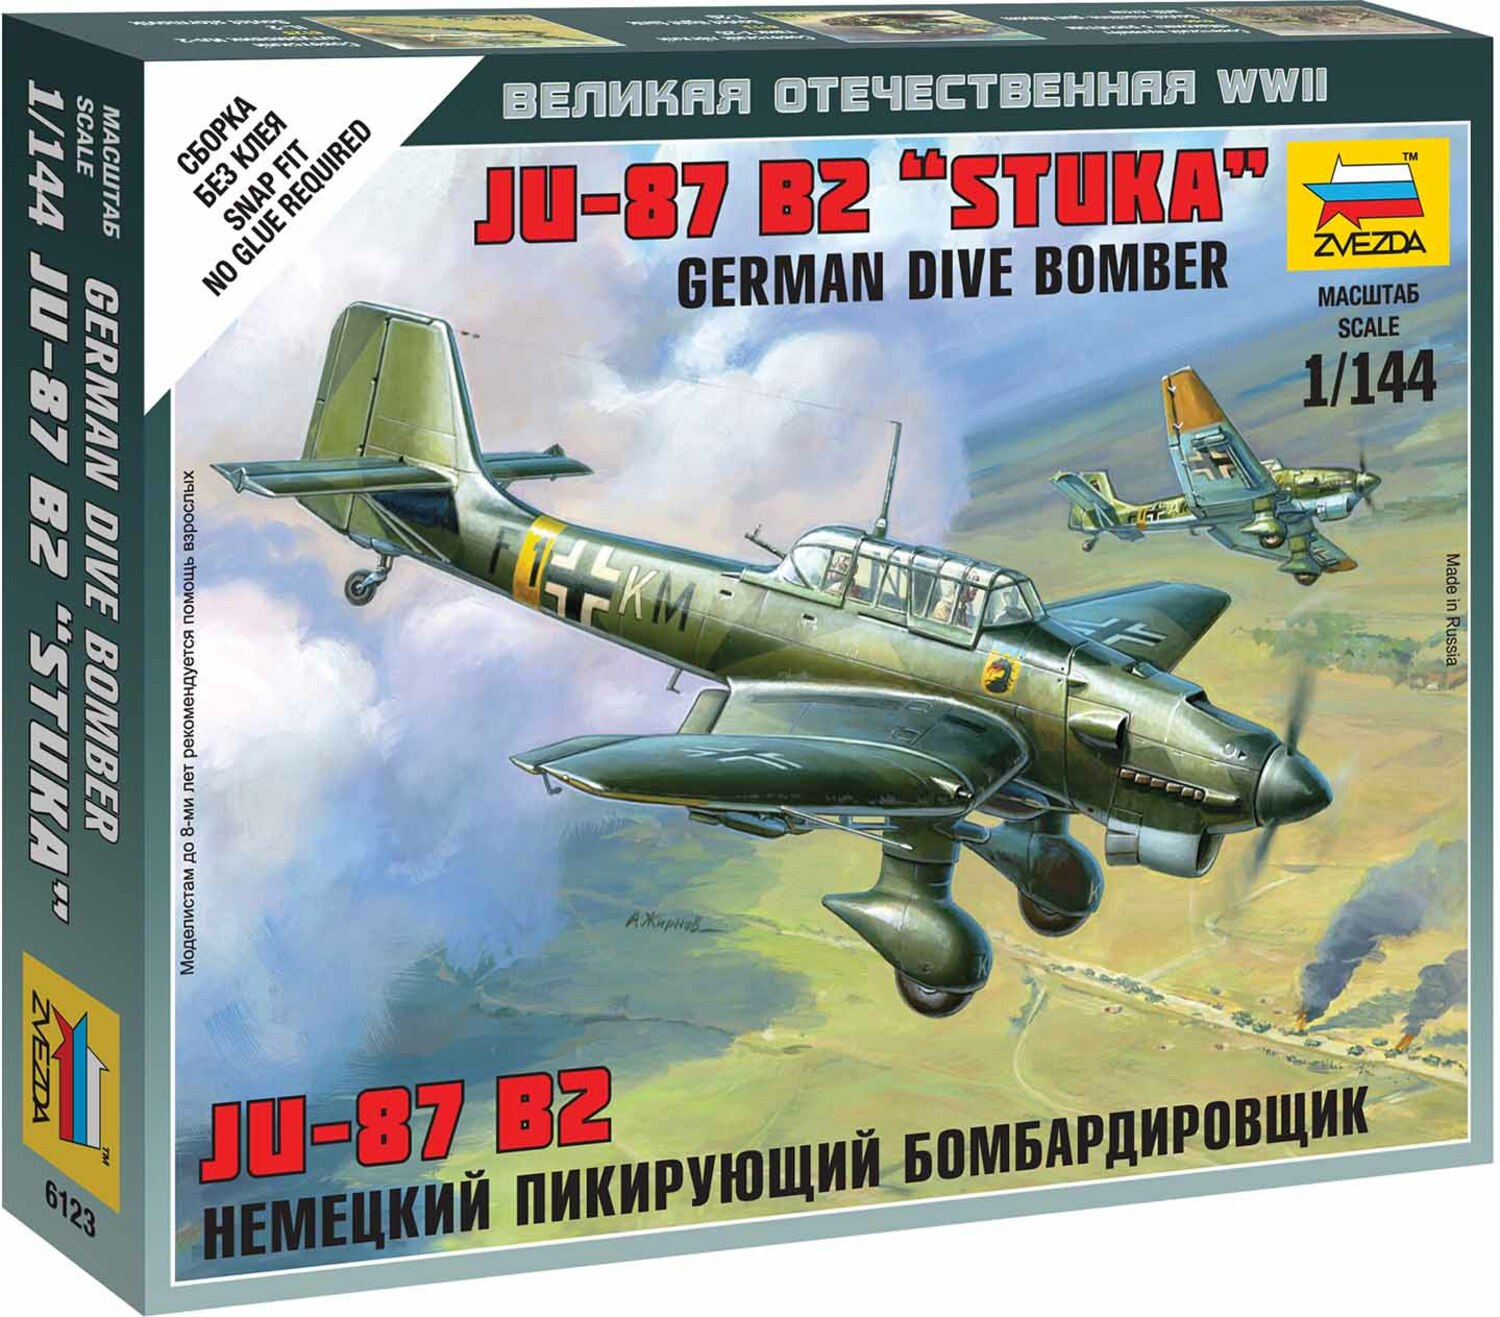 Wargames (WWII) letadlo 6123 - Junkers JU-87 Stuka (1: 144)